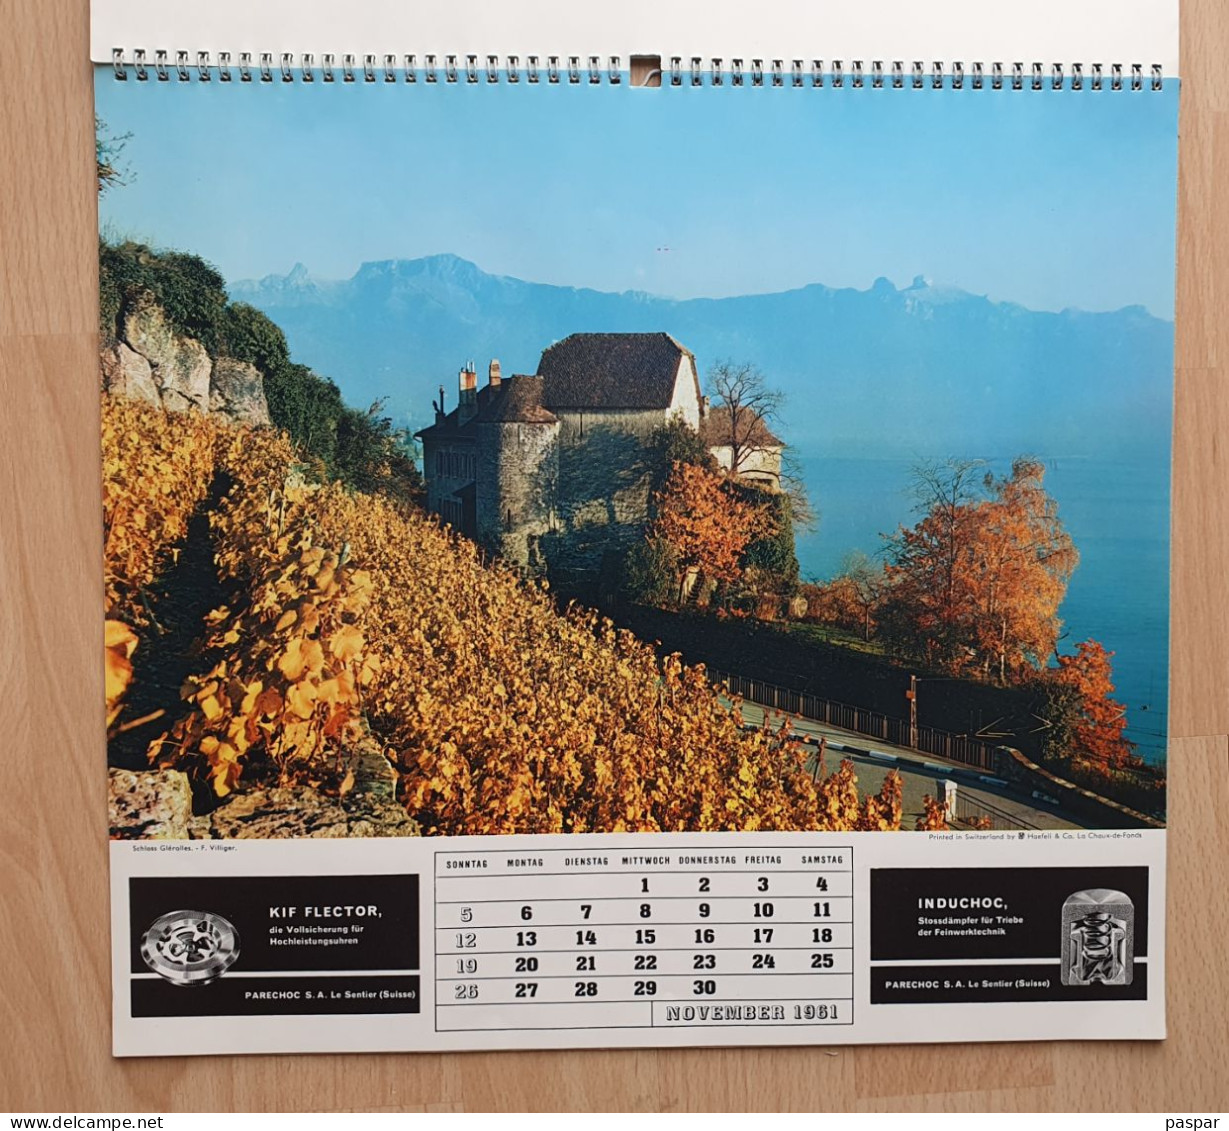 Grand calendrier 1961 - publicité Parechoc le Sentier, Alpa, Bolex, Thorens, Induchoc, Kif Flector - Vues de Suisse